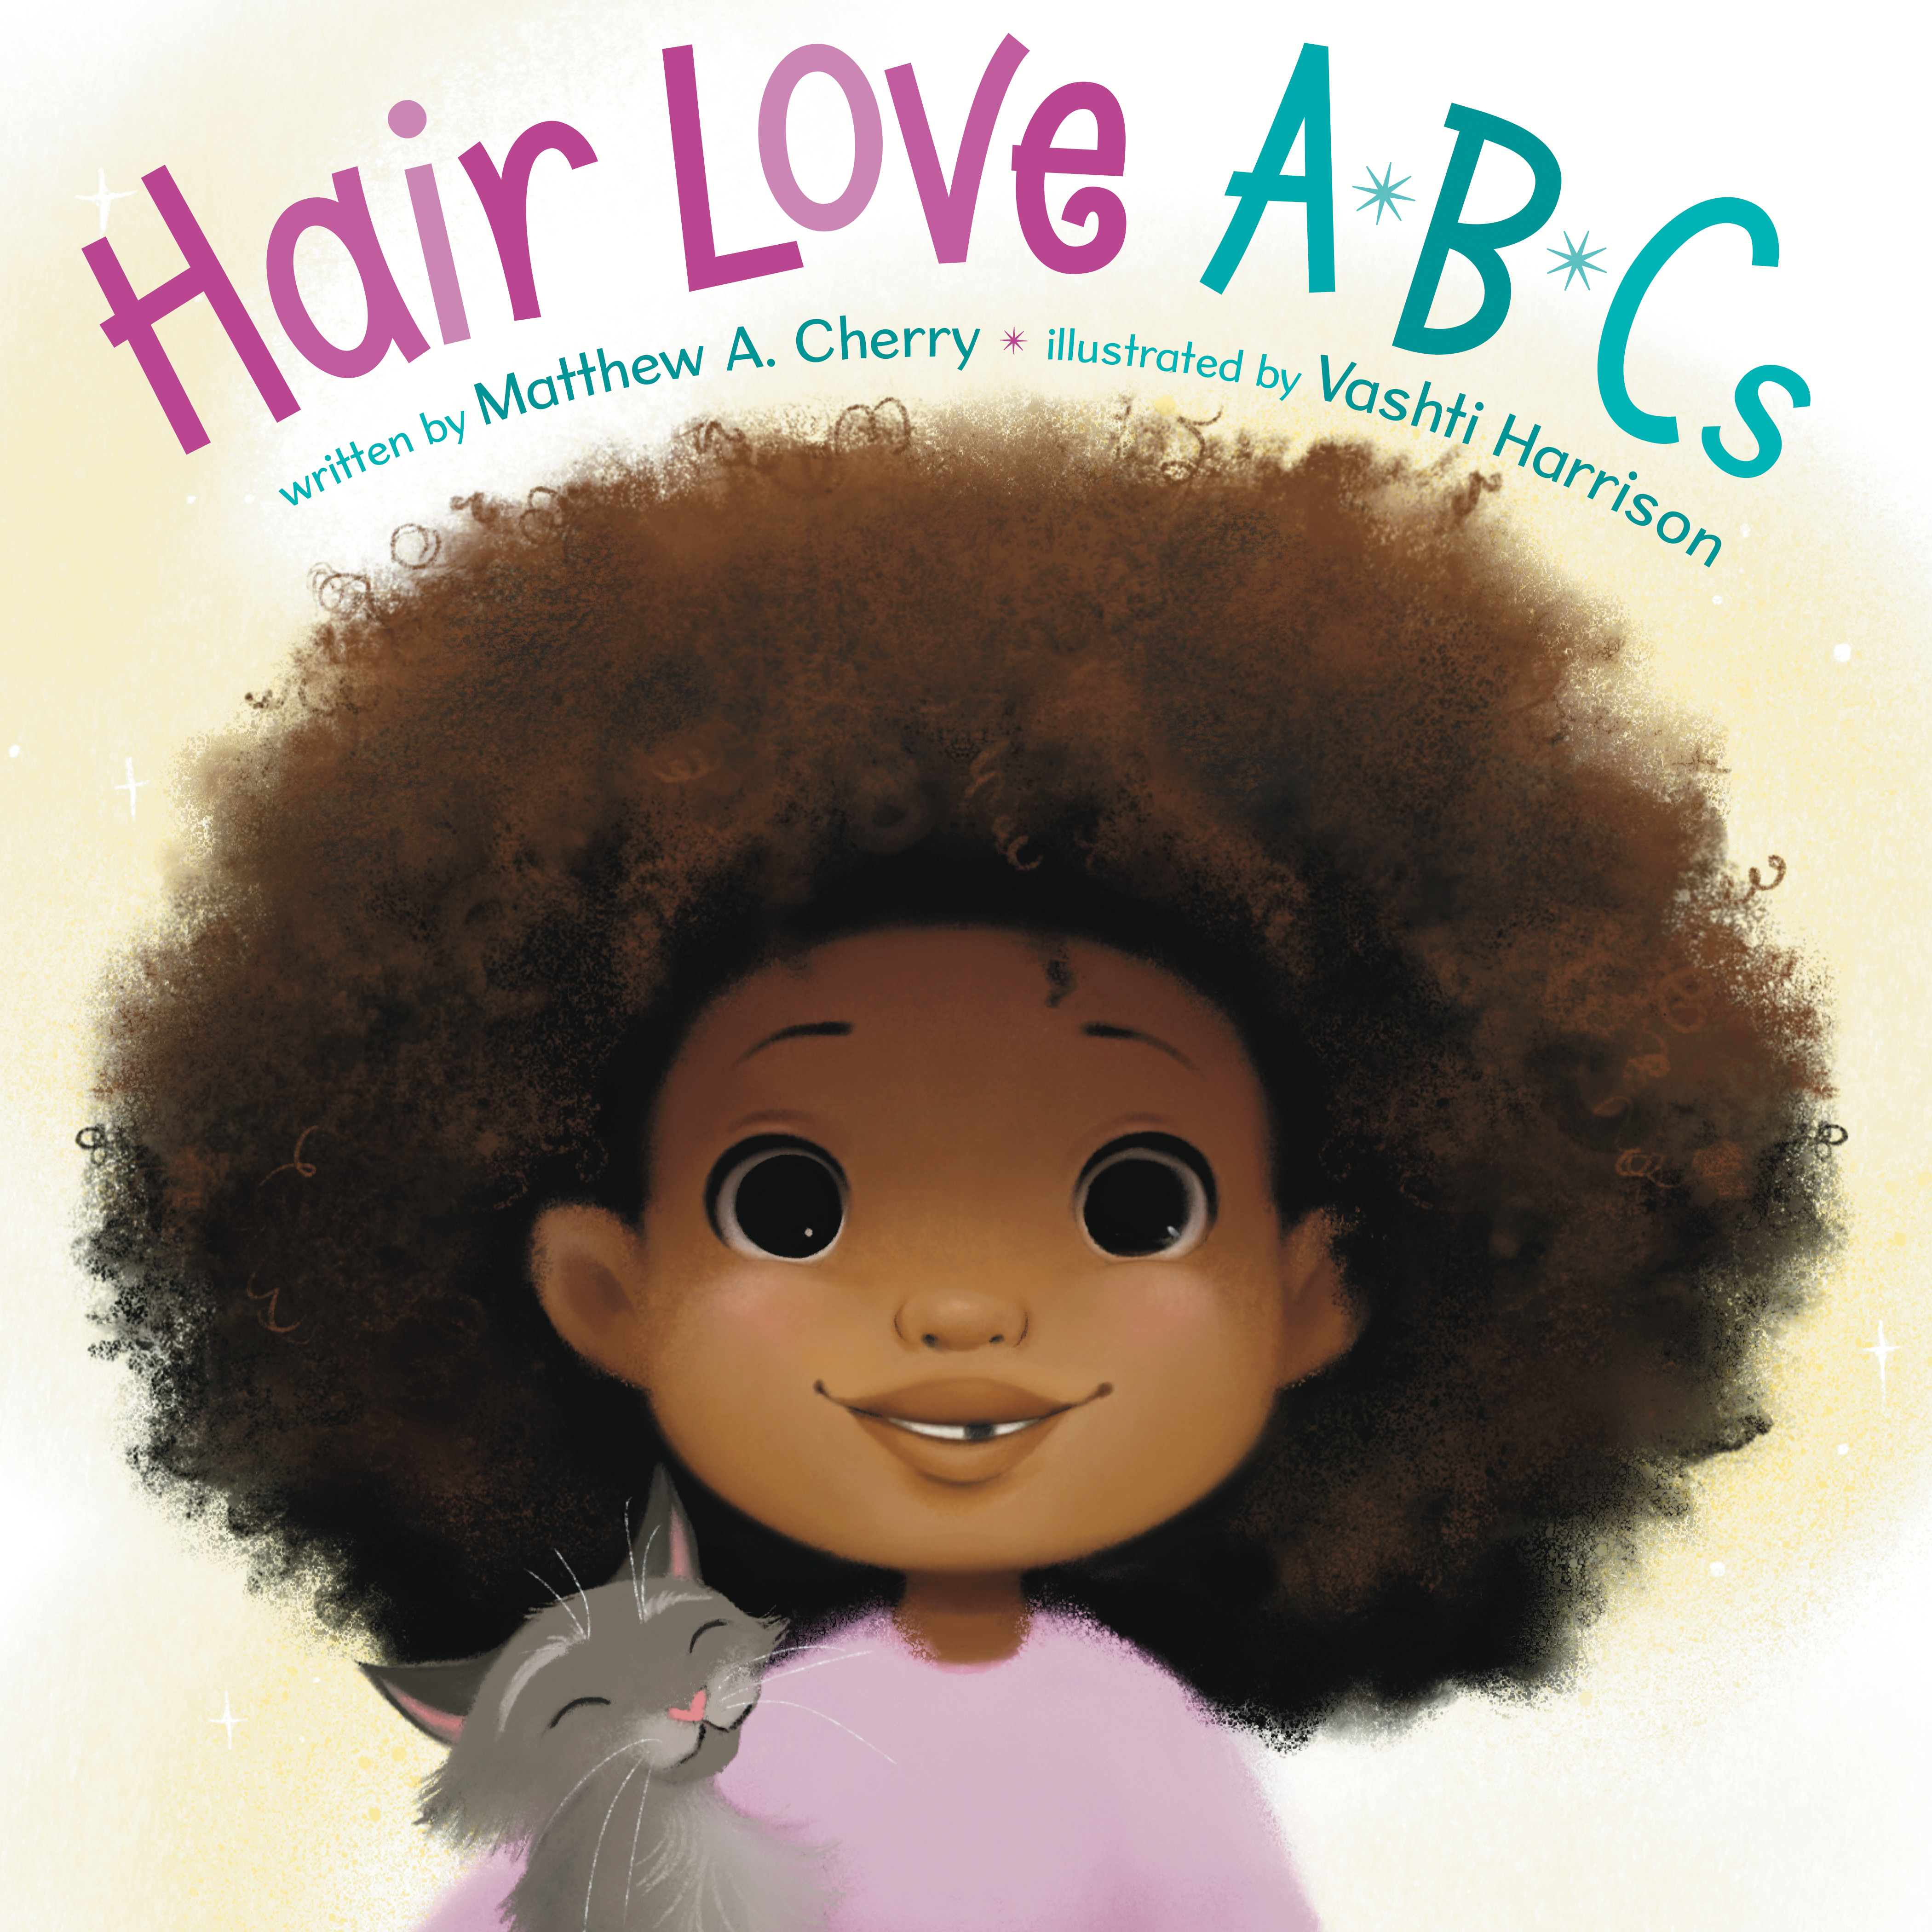 Hair Love ABCs | Cherry, Matthew A. (Auteur) | Harrison, Vashti (Illustrateur)